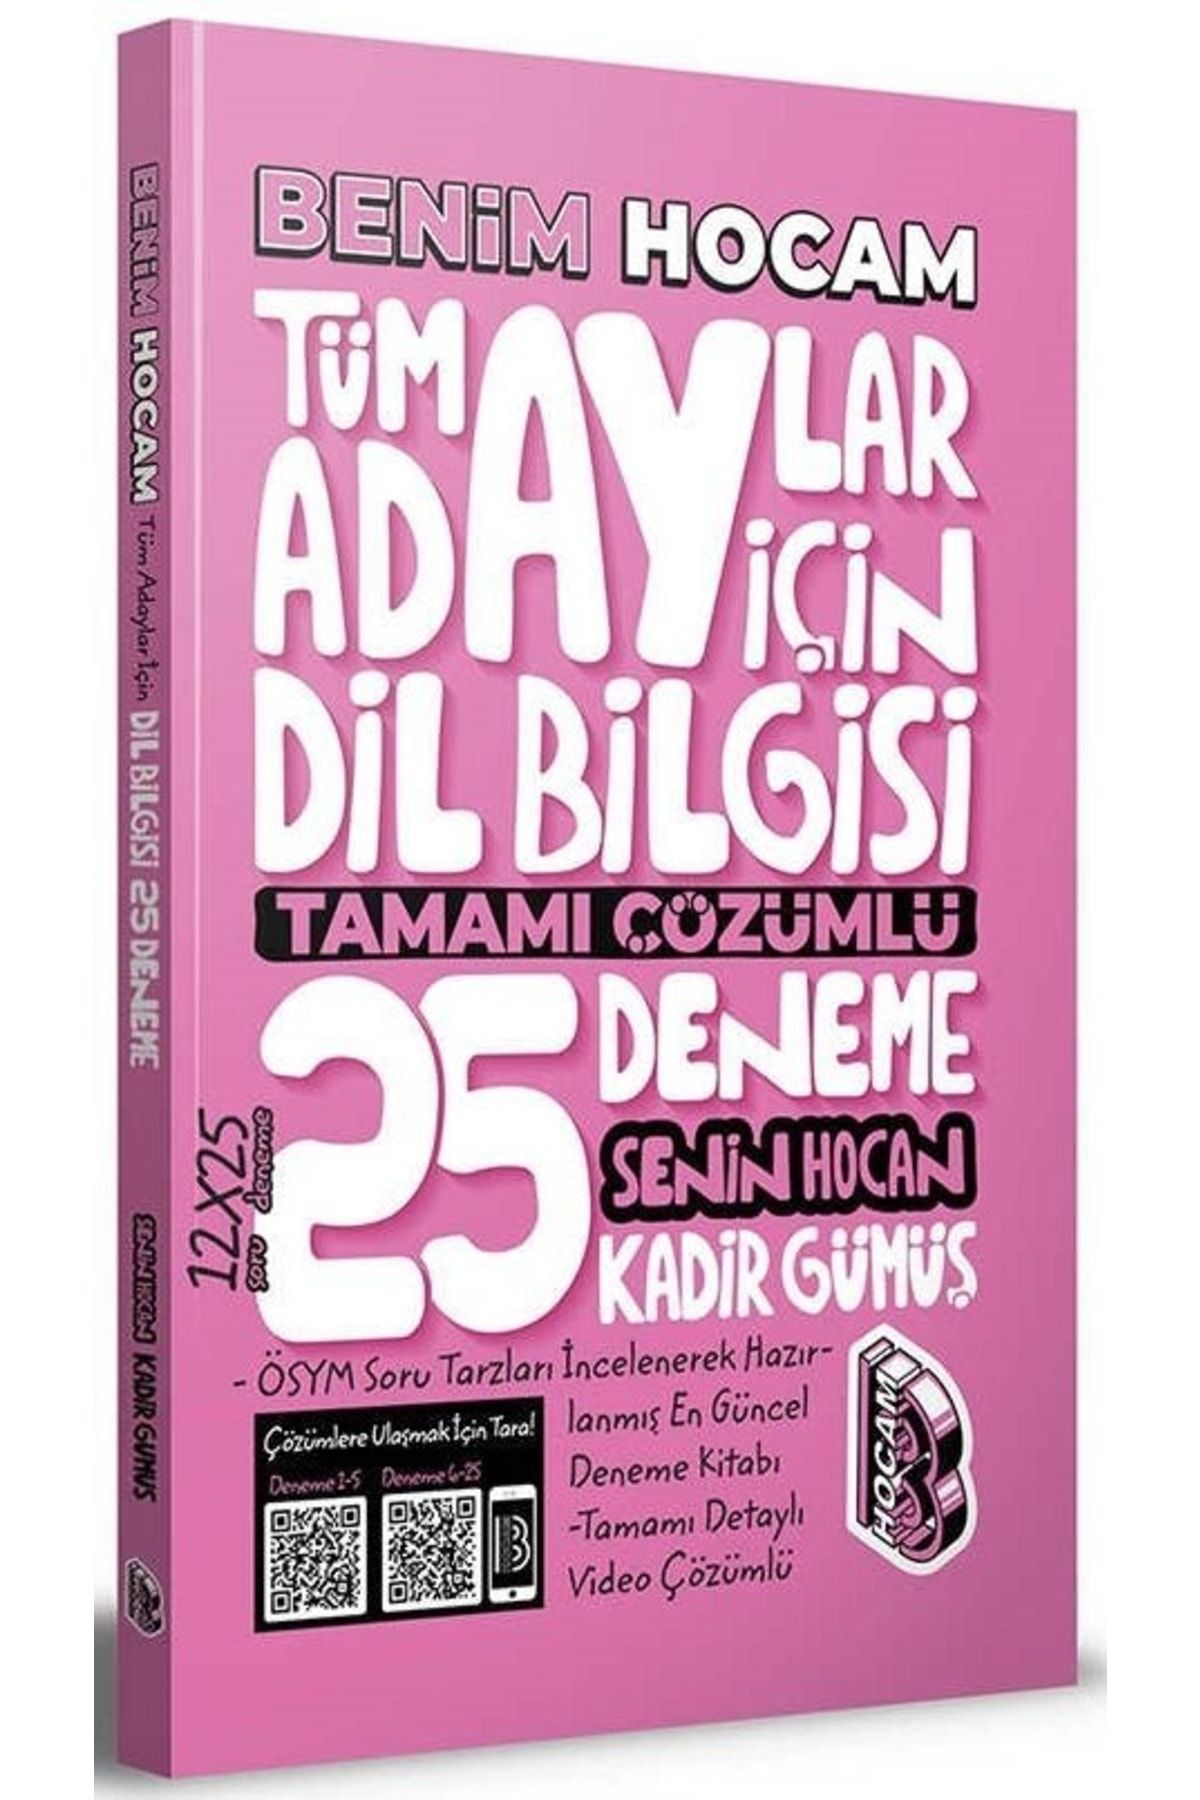 Benim Hocam Yayınları Benim Hocam Tüm Adaylar Için Dil Bilgisi 25 Deneme Çözümlü - Kadir Gümüş